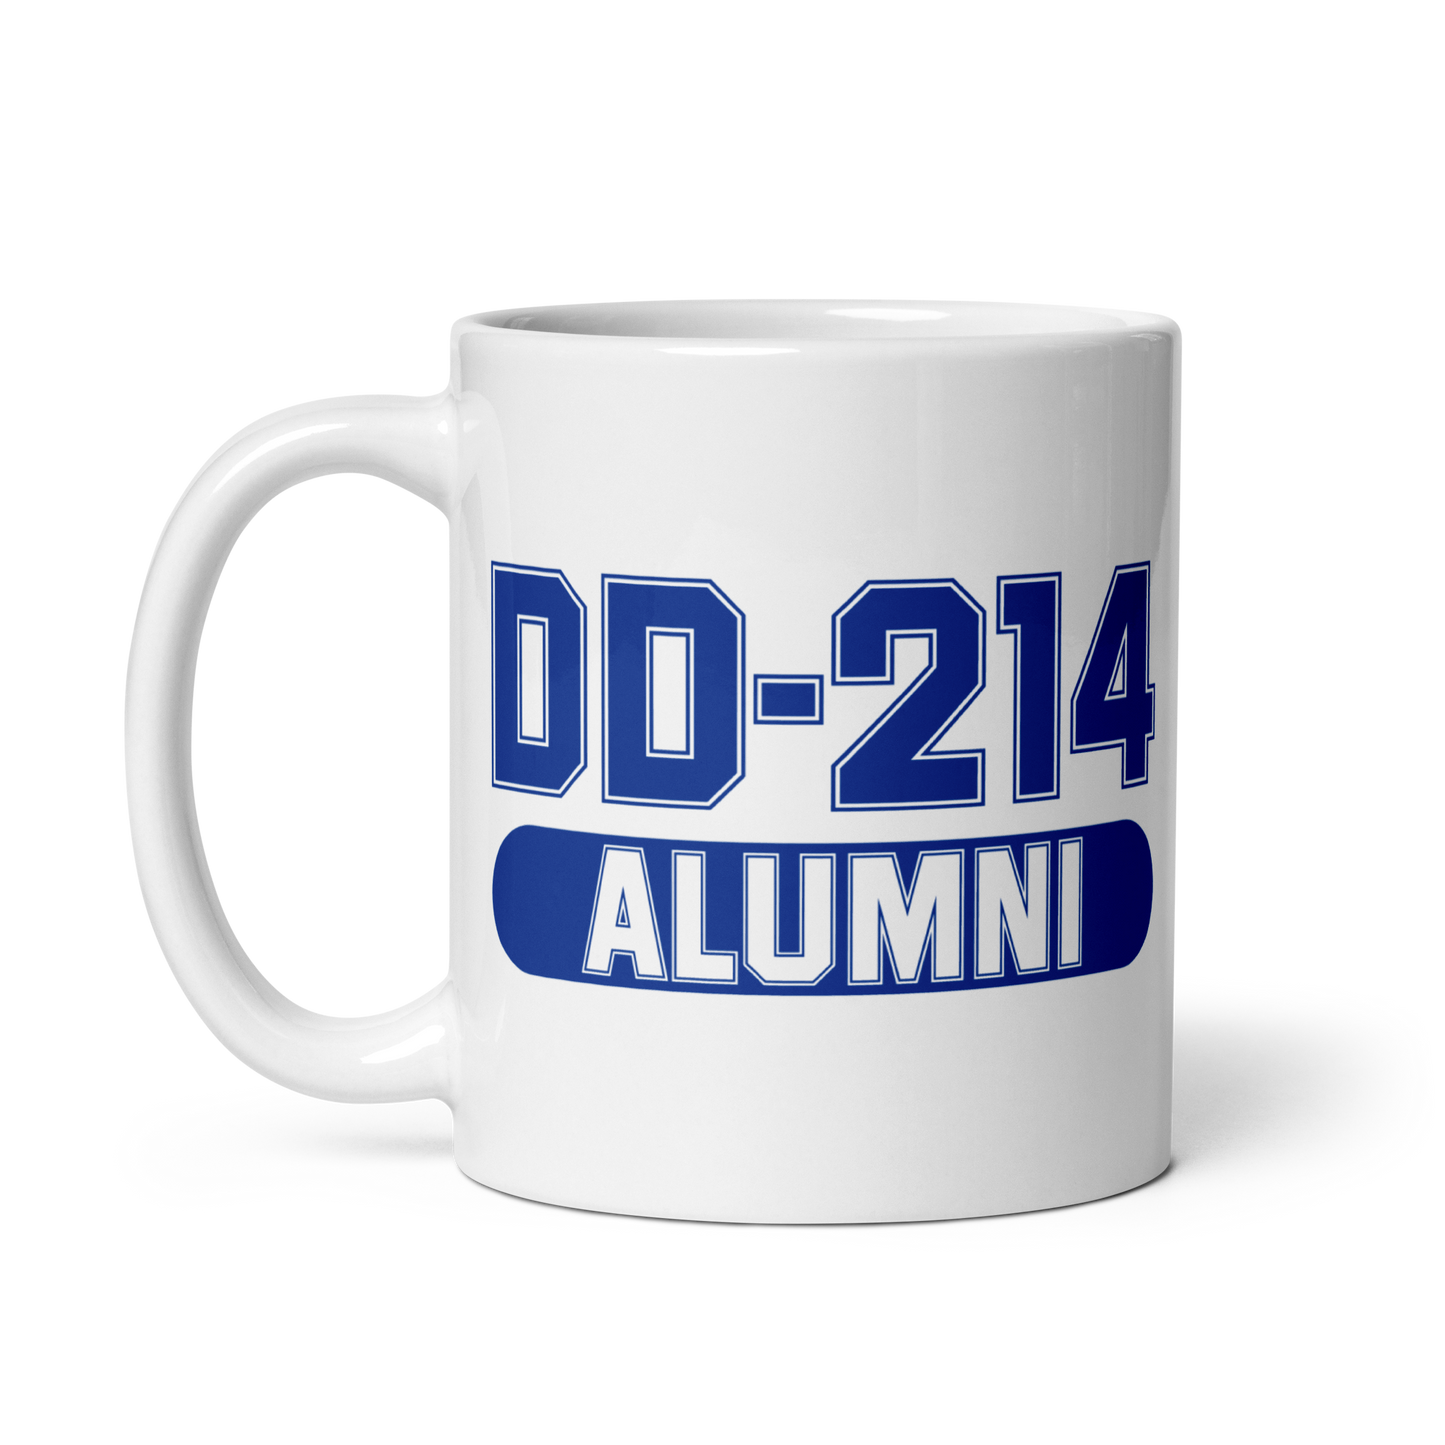 DD-214 Alumni Mug